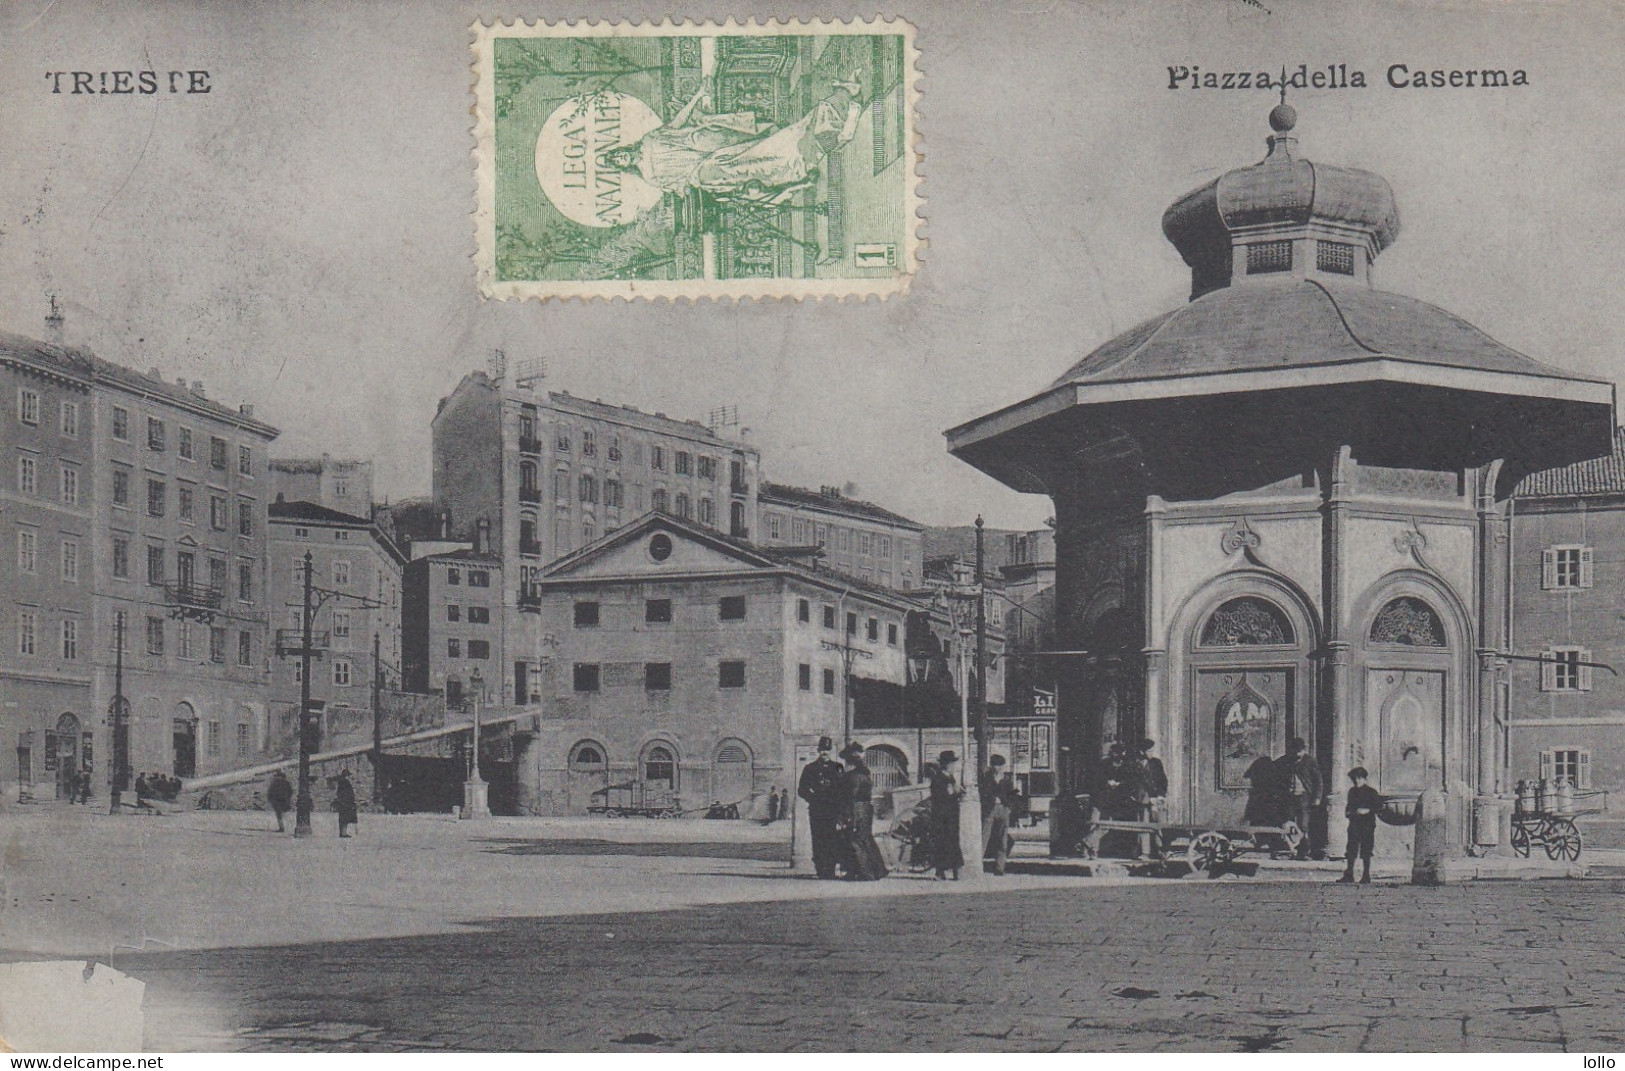 Fiuli Venezia Giulia  -   Trieste  - Piazza Della Caserma   - F. Piccolo  -  Viagg  -  Bella Animata - Insolita - Trieste